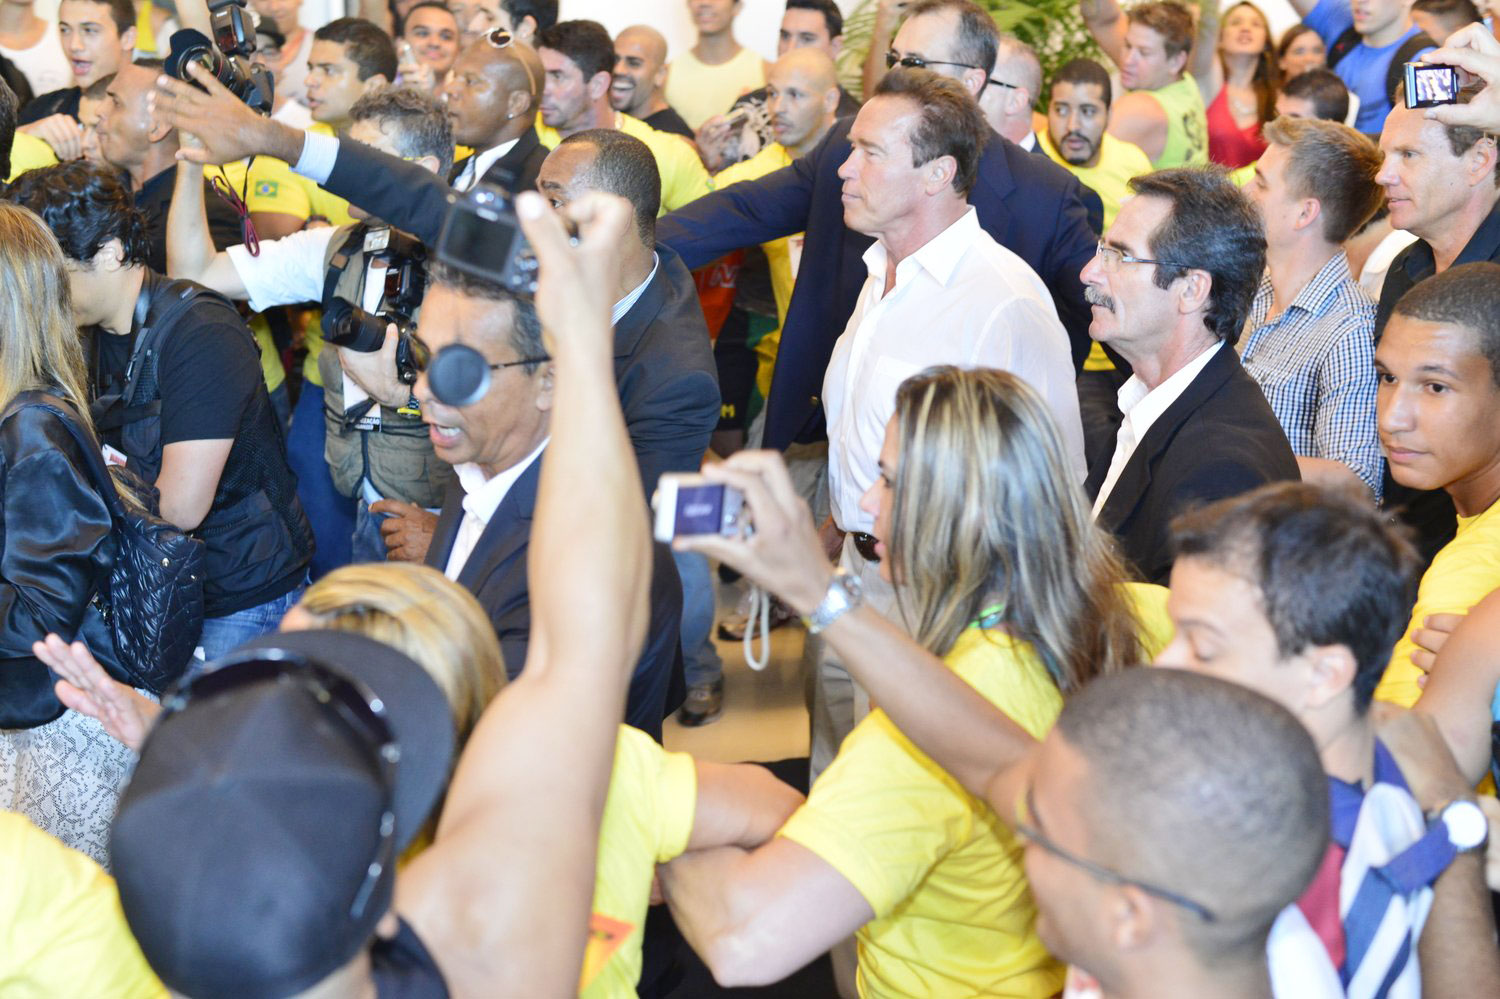 Arnold Schwarzenegger causa tumulto ao chegar a evento no Rio de Janeiro